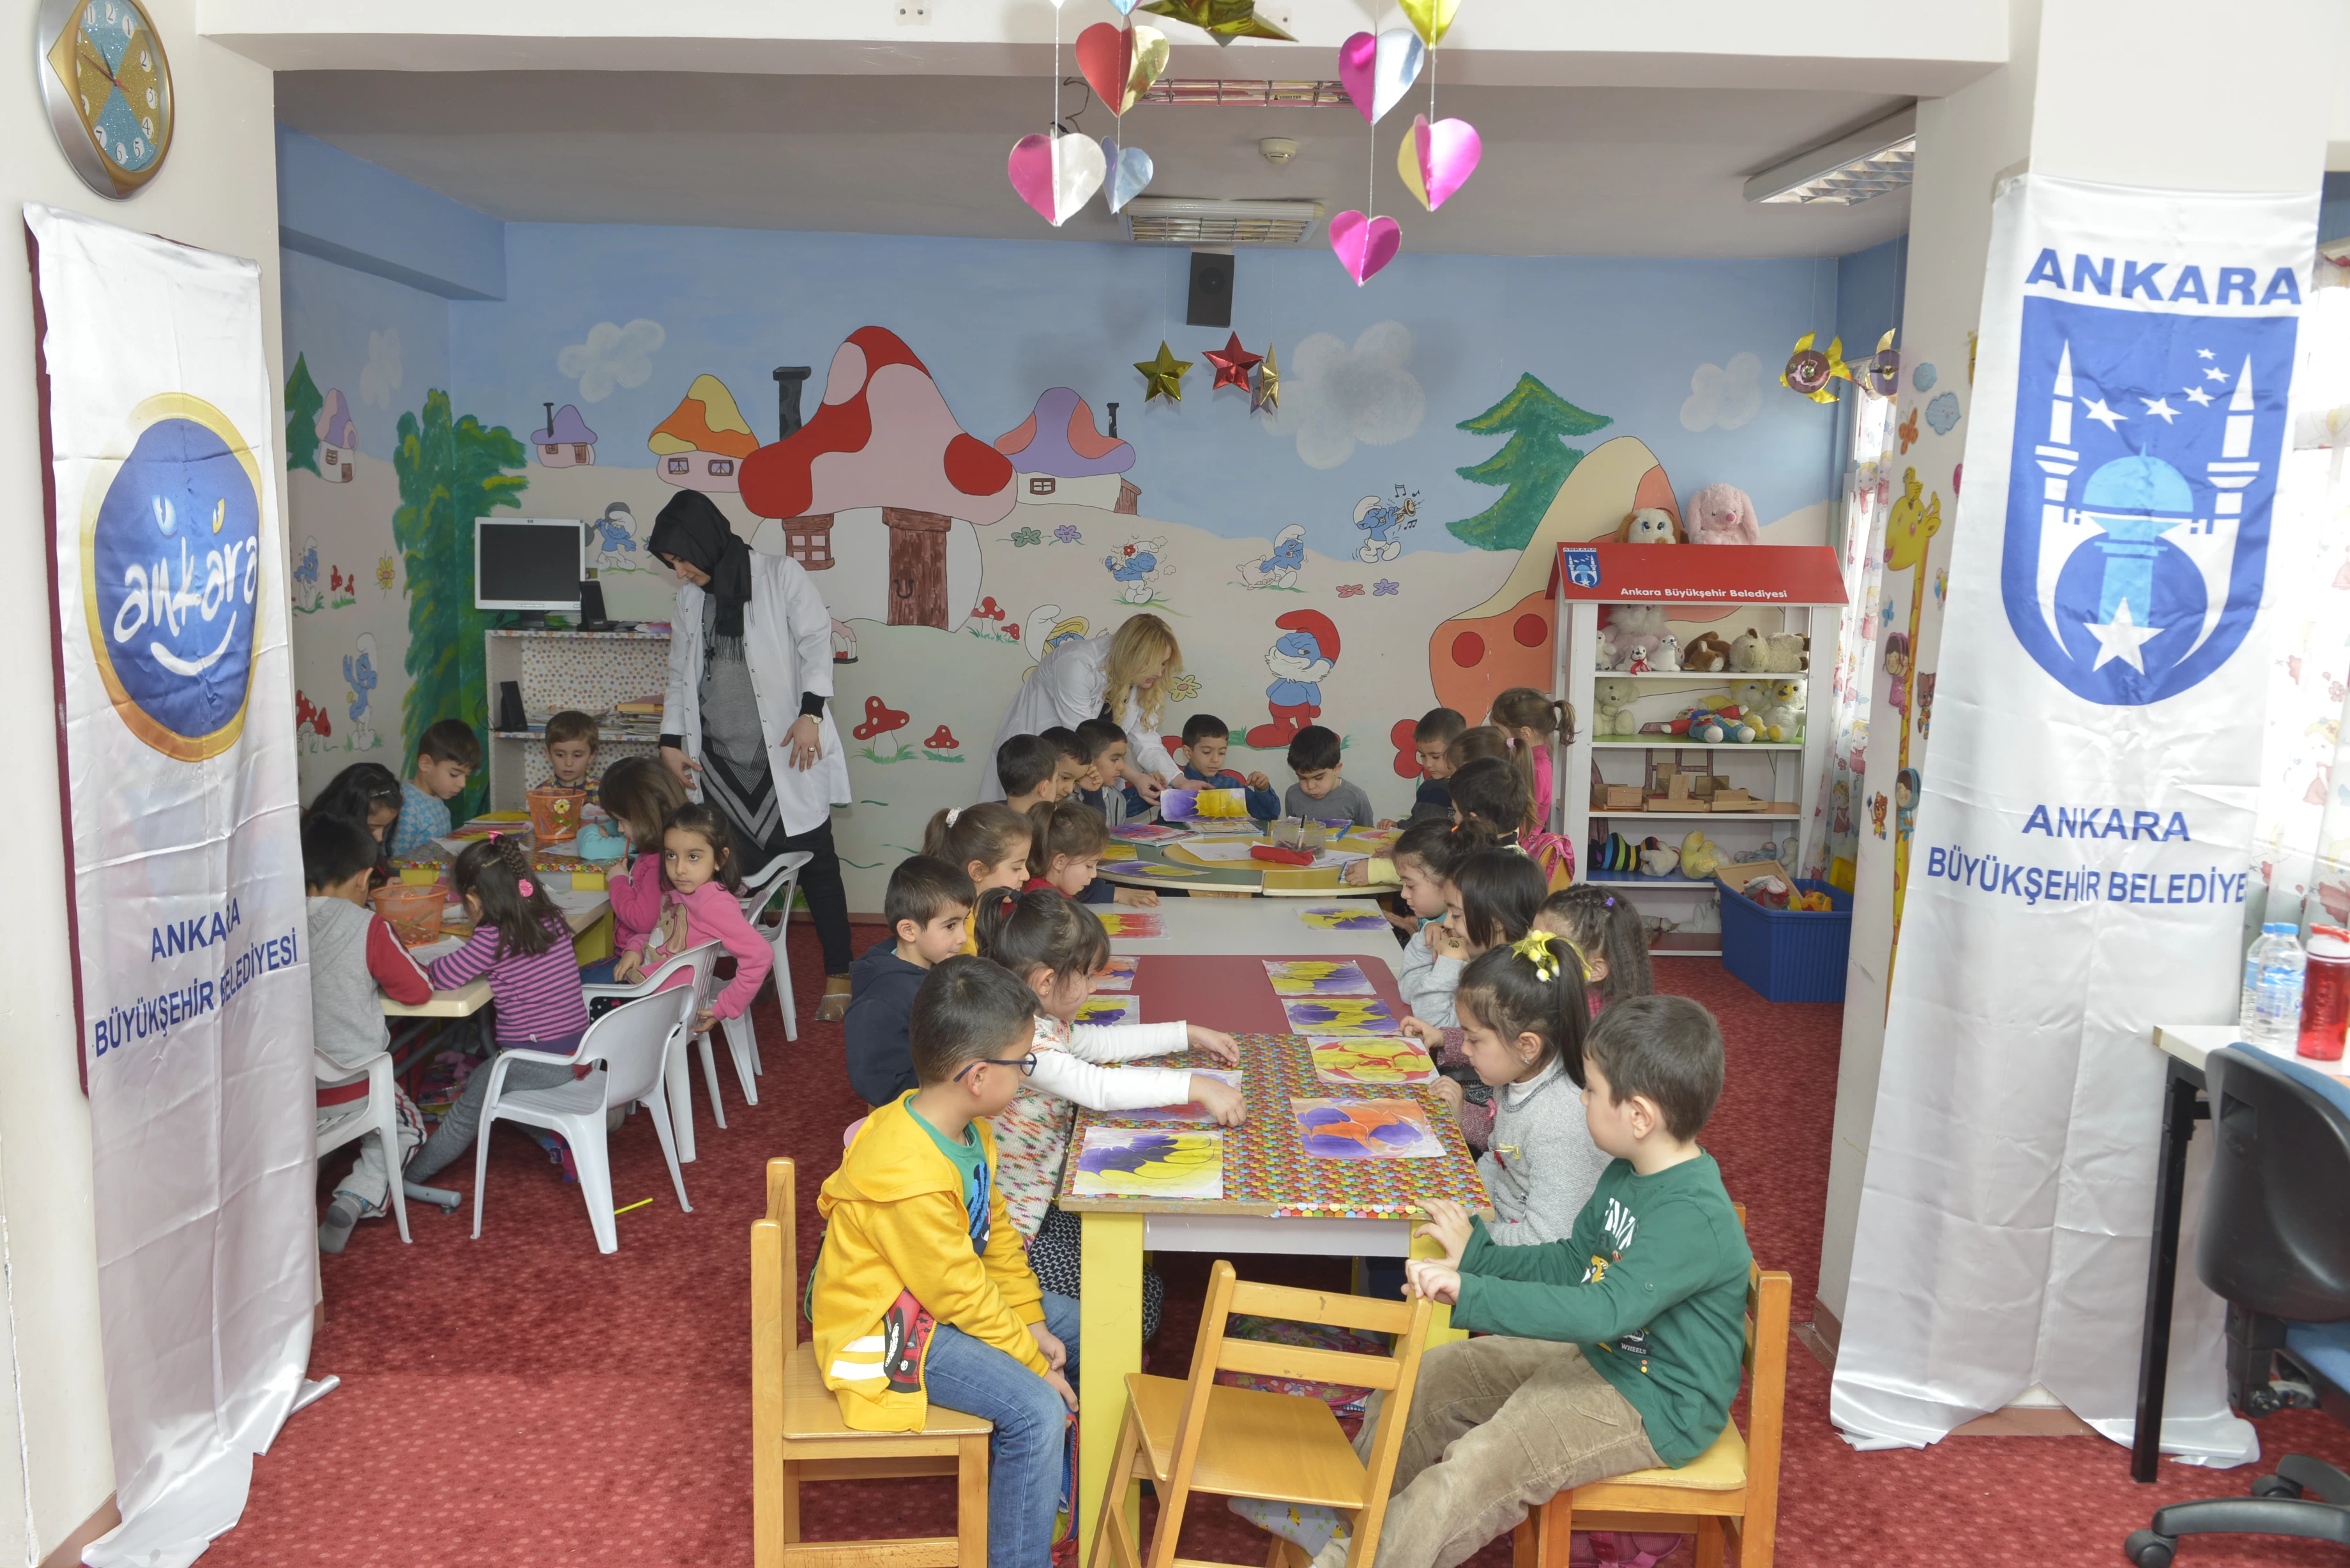 Ankara'da yaşayan 7-14 yaş arasındaki çocuklar için ücretsiz kulüpler duyuruldu! Sosyal faaliyetler ile gelişimleri desteklenecek